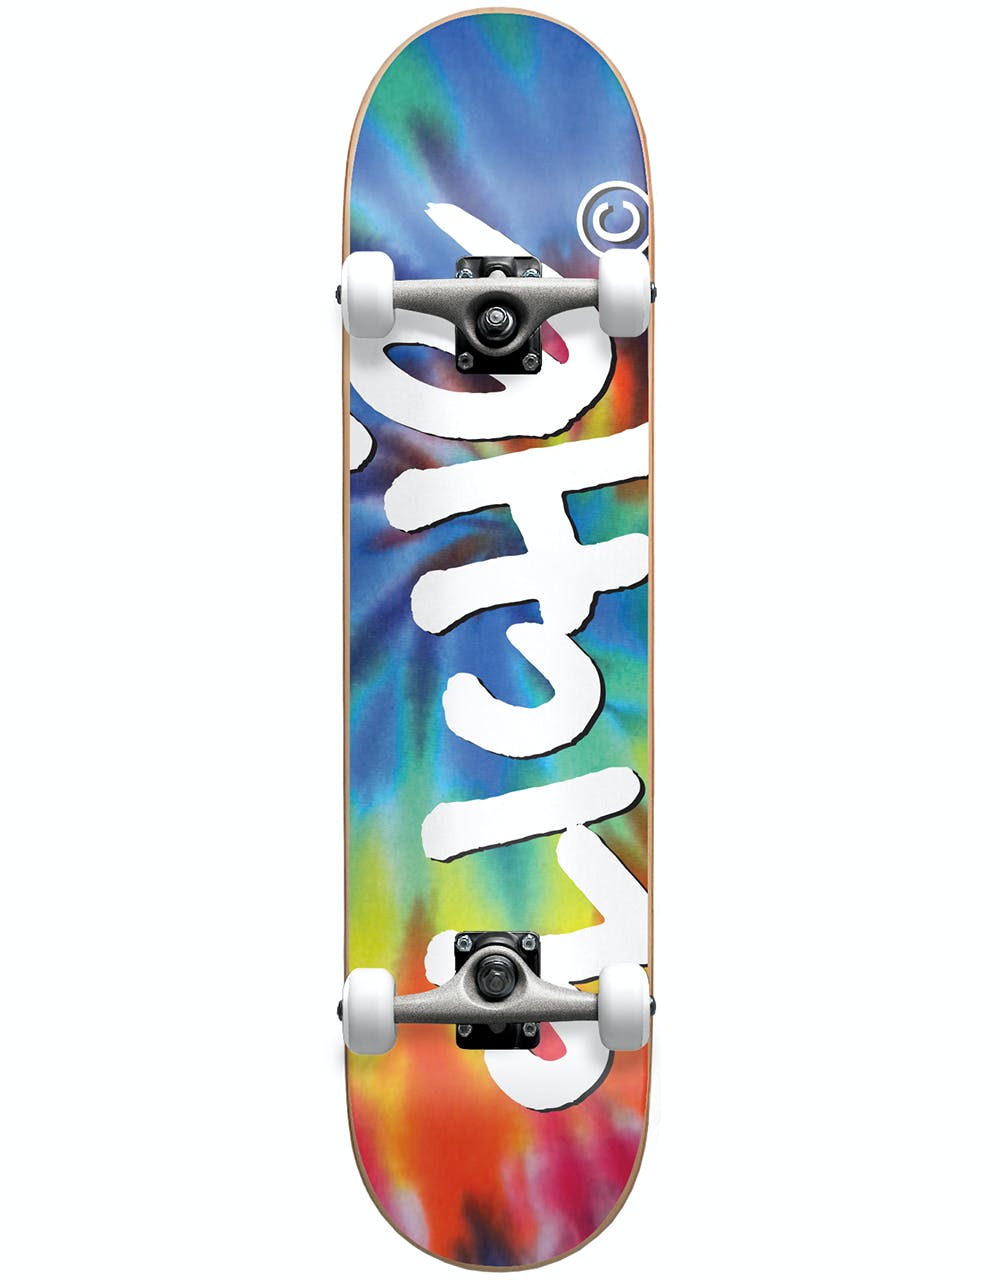 Cliché Handwritten Tie Dye Complete Skateboard - 7.75"